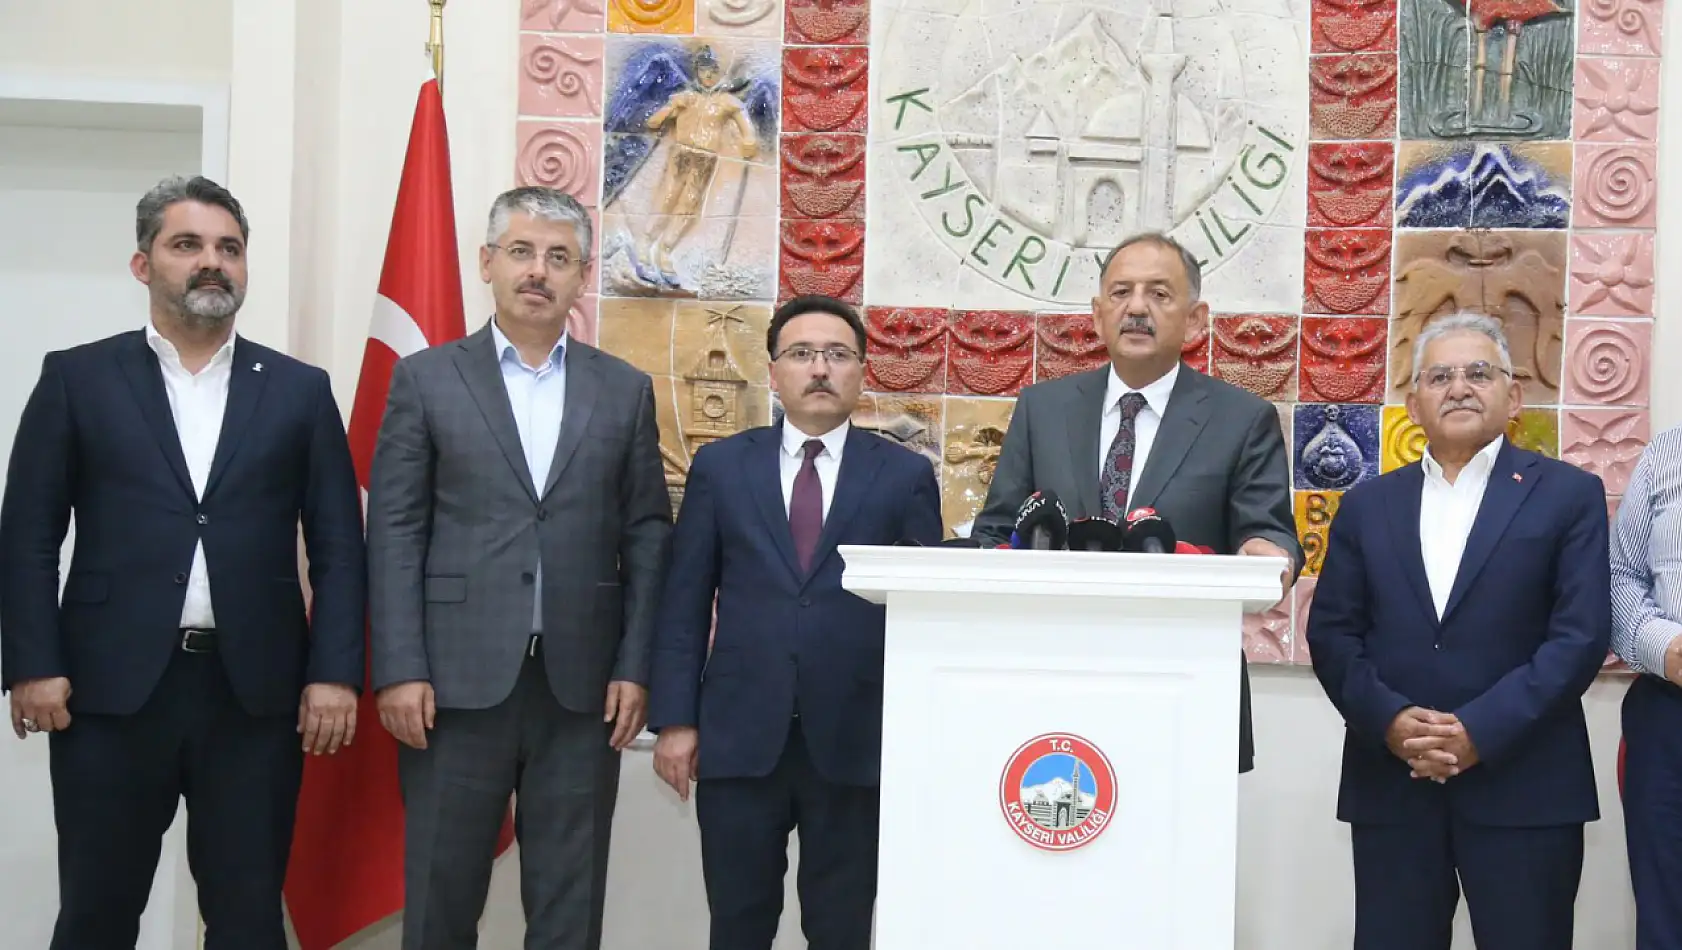 Kayserispor'un tranfser yasağı kalkıyor – Özhaseki tarih verdi